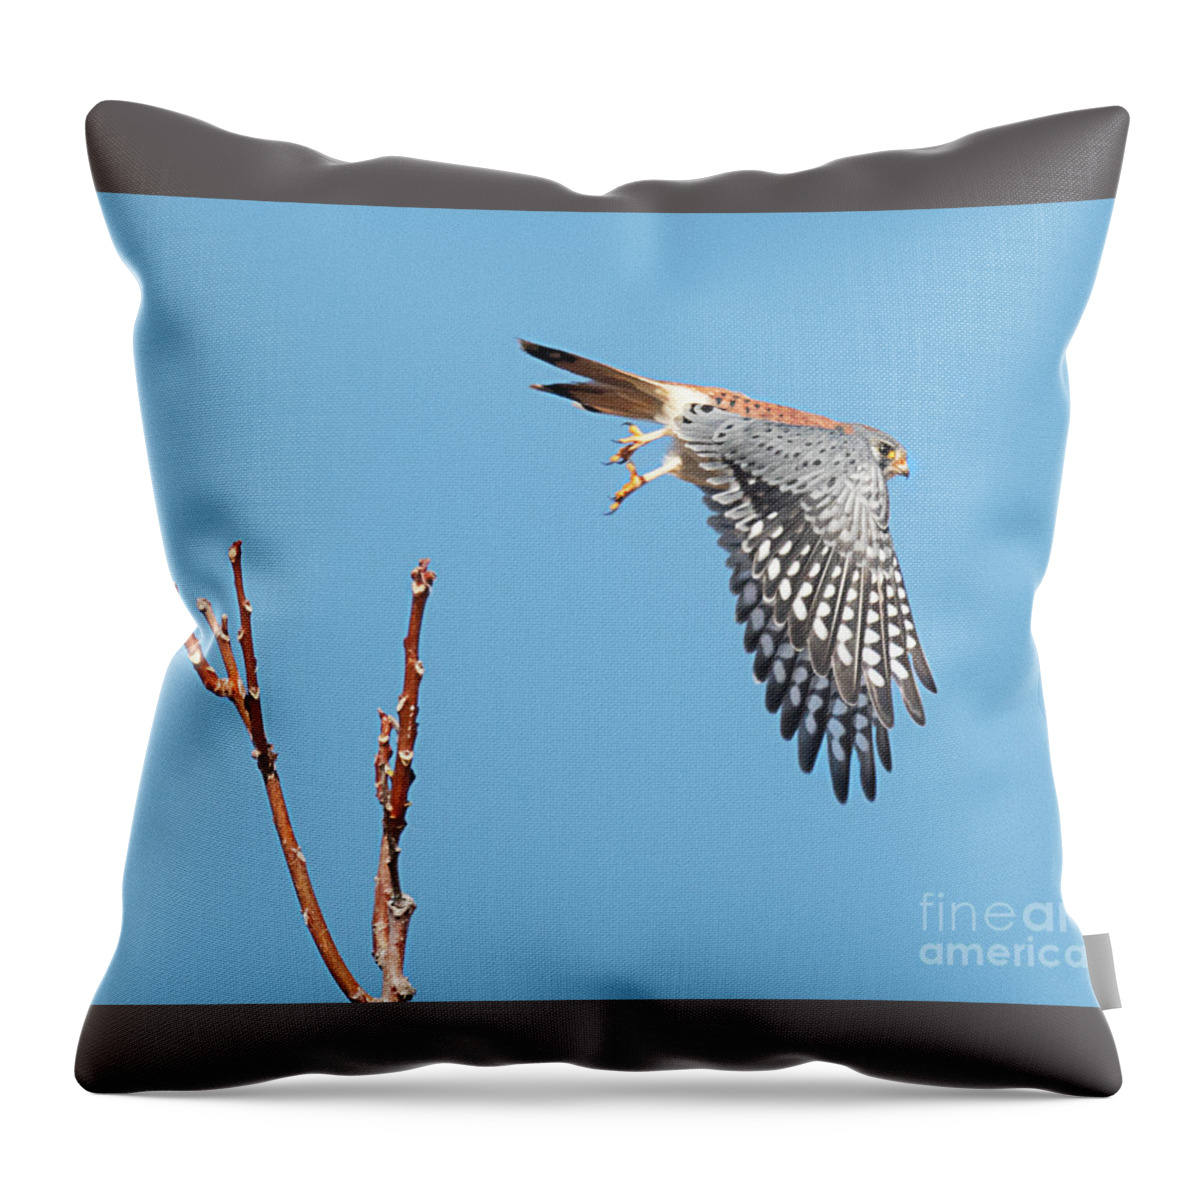 Bird Throw Pillow featuring the photograph Kestrel Taking Flight by Dennis Hammer